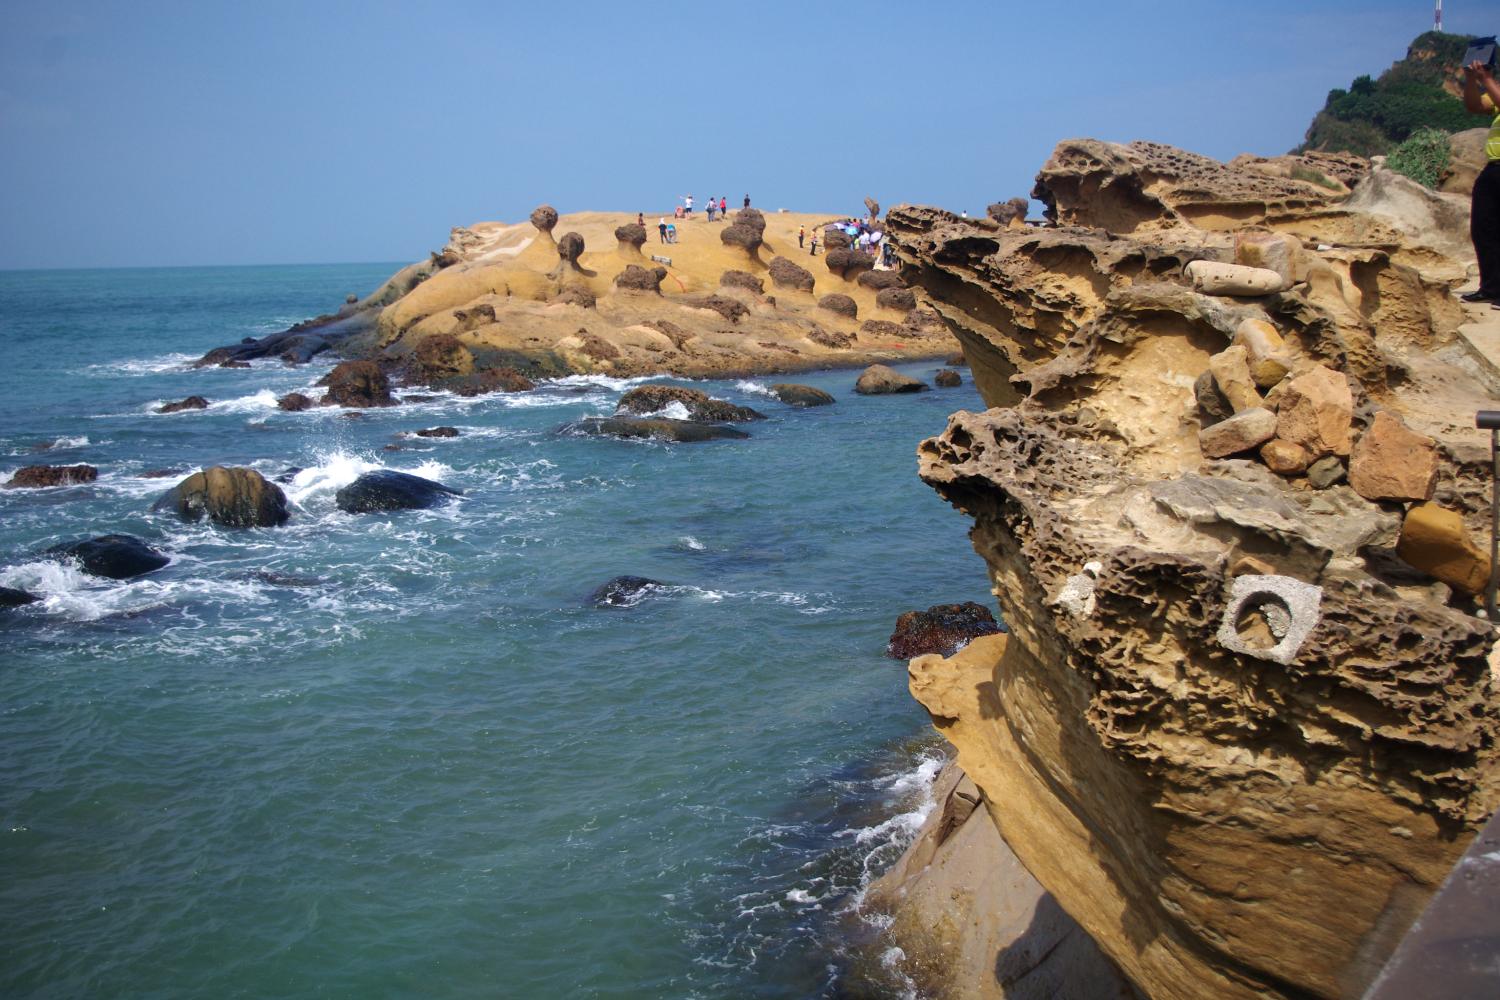 这里有举世罕见的海岸地貌景观180个蕈状岩屹立成群